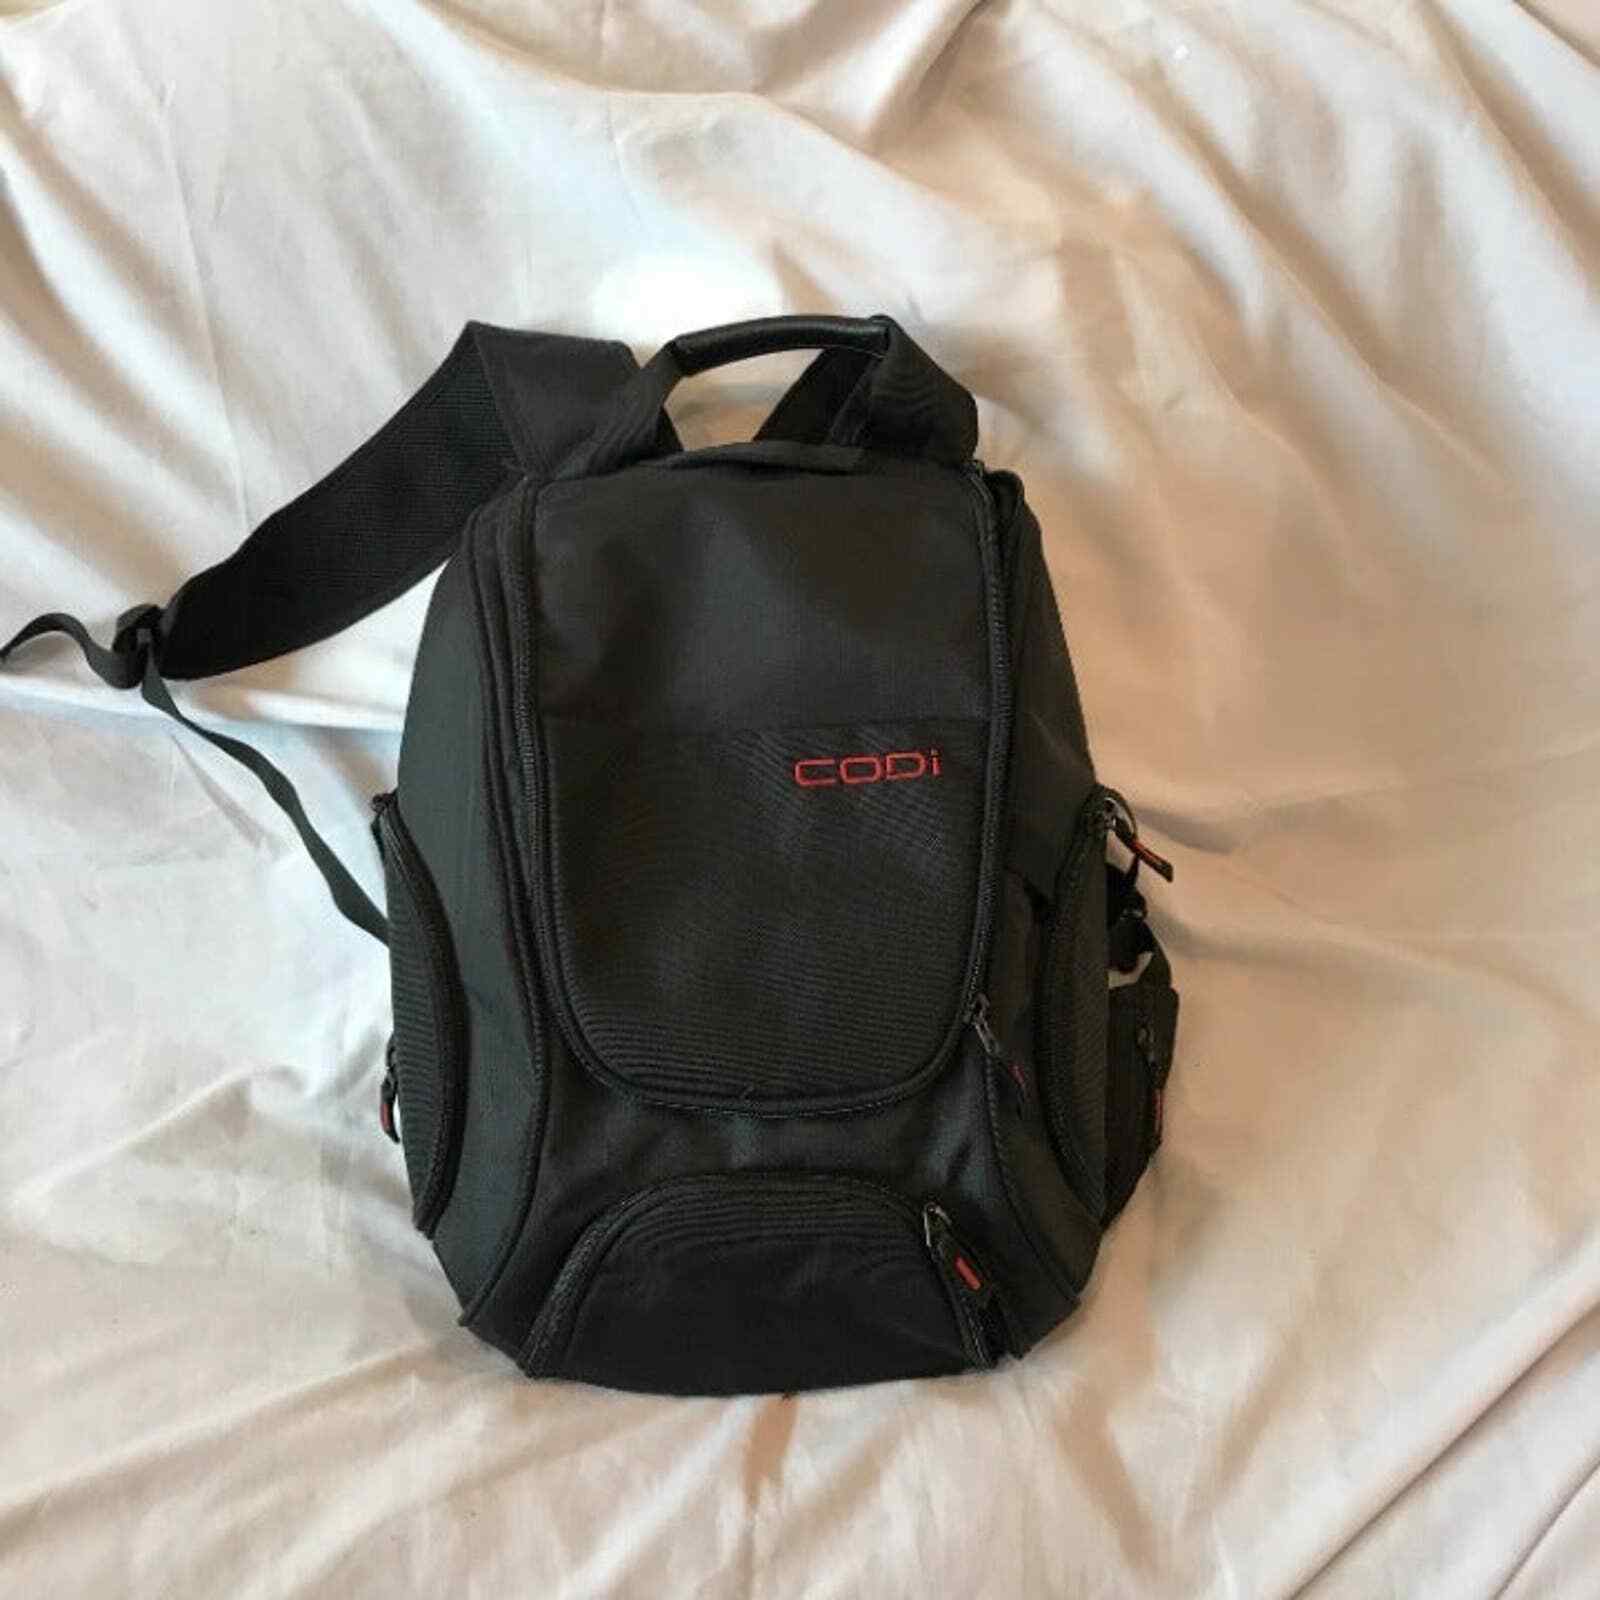 Codi Computer Backpack